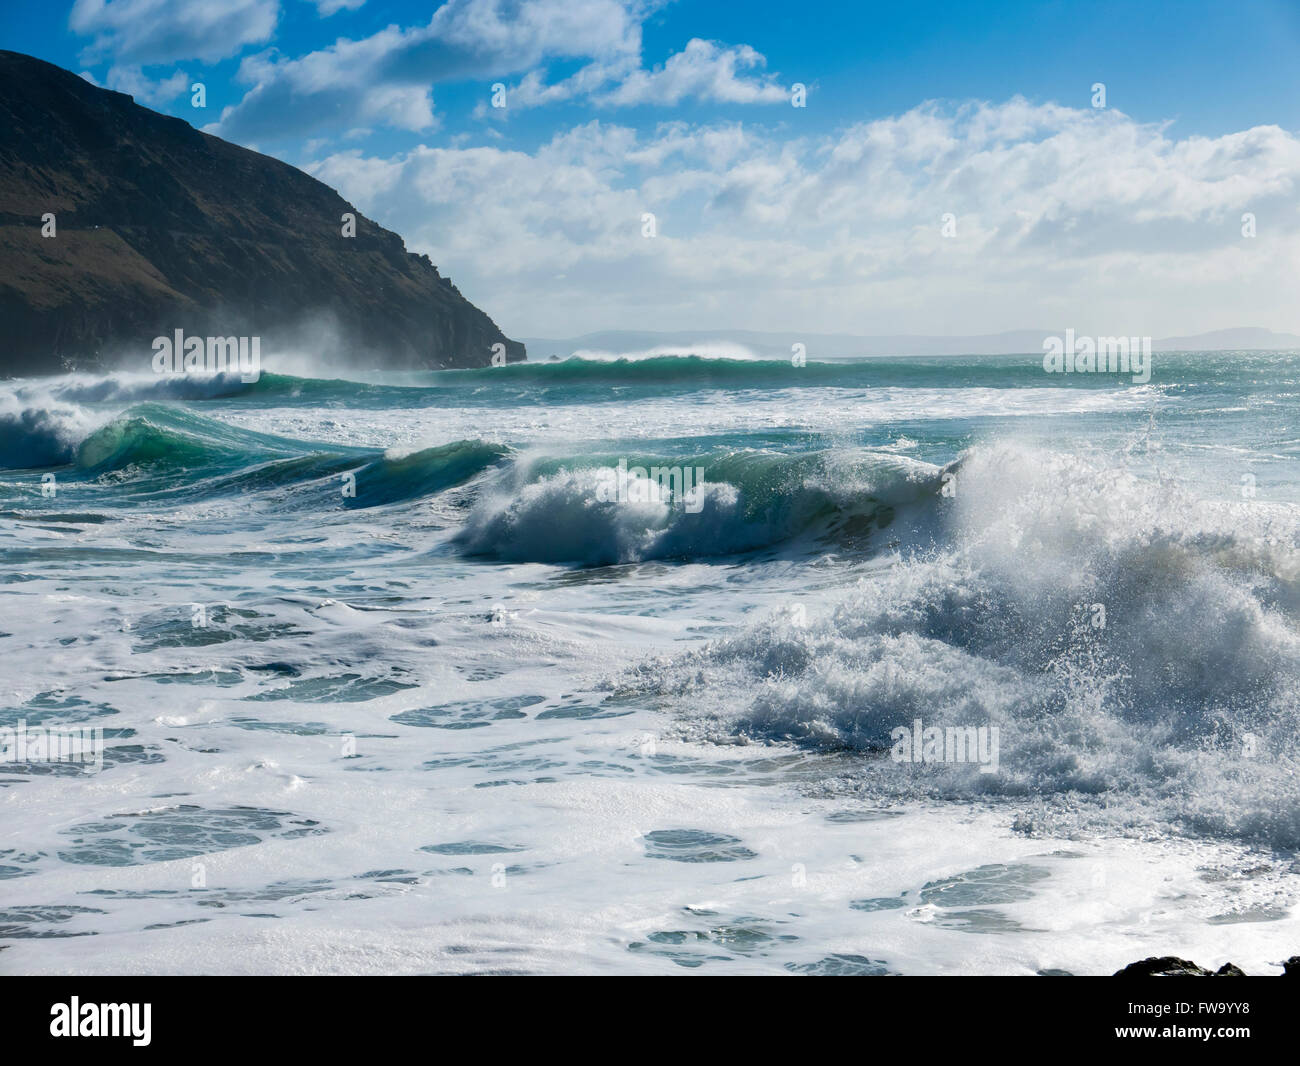 El romper de las olas en la playa en el Dunquin Slea Head, unidad de la península Dingle en el condado de Kerry, República de Irlanda. Foto de stock